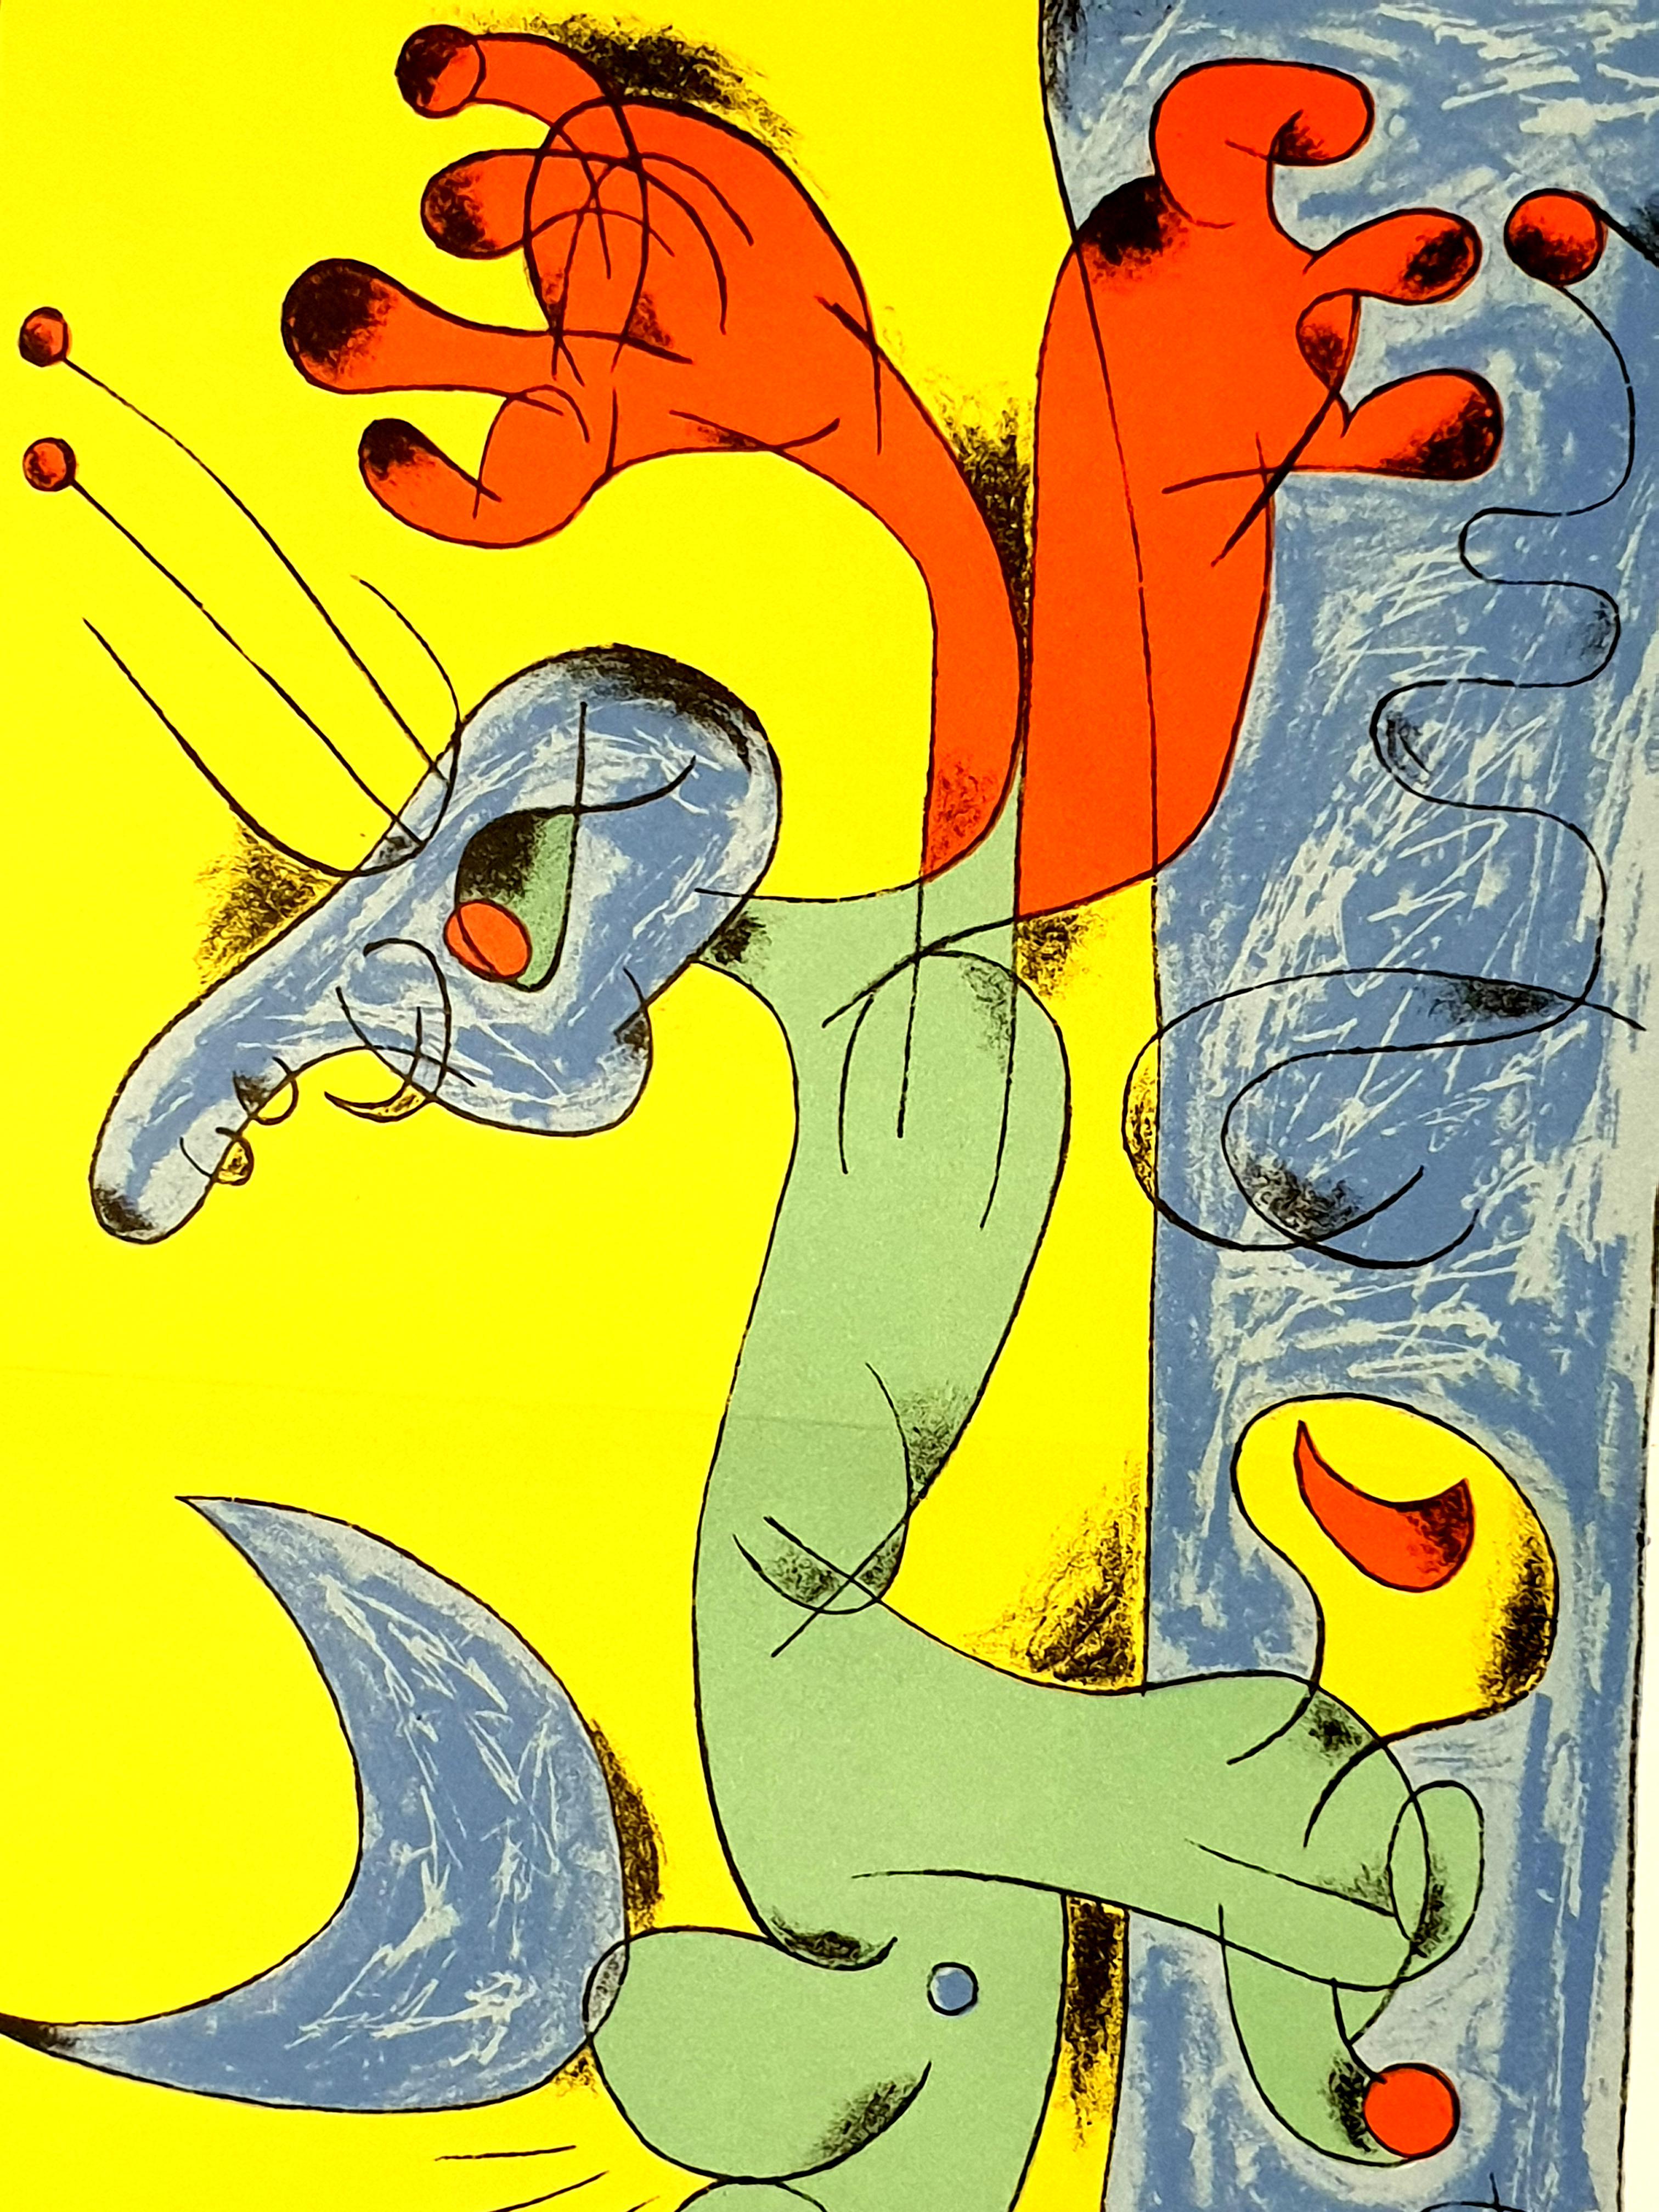 Joan Miro – spielender Hund – Lithographie in Farben
Künstler: Joan Miro
Komposition 7 für das Buch 